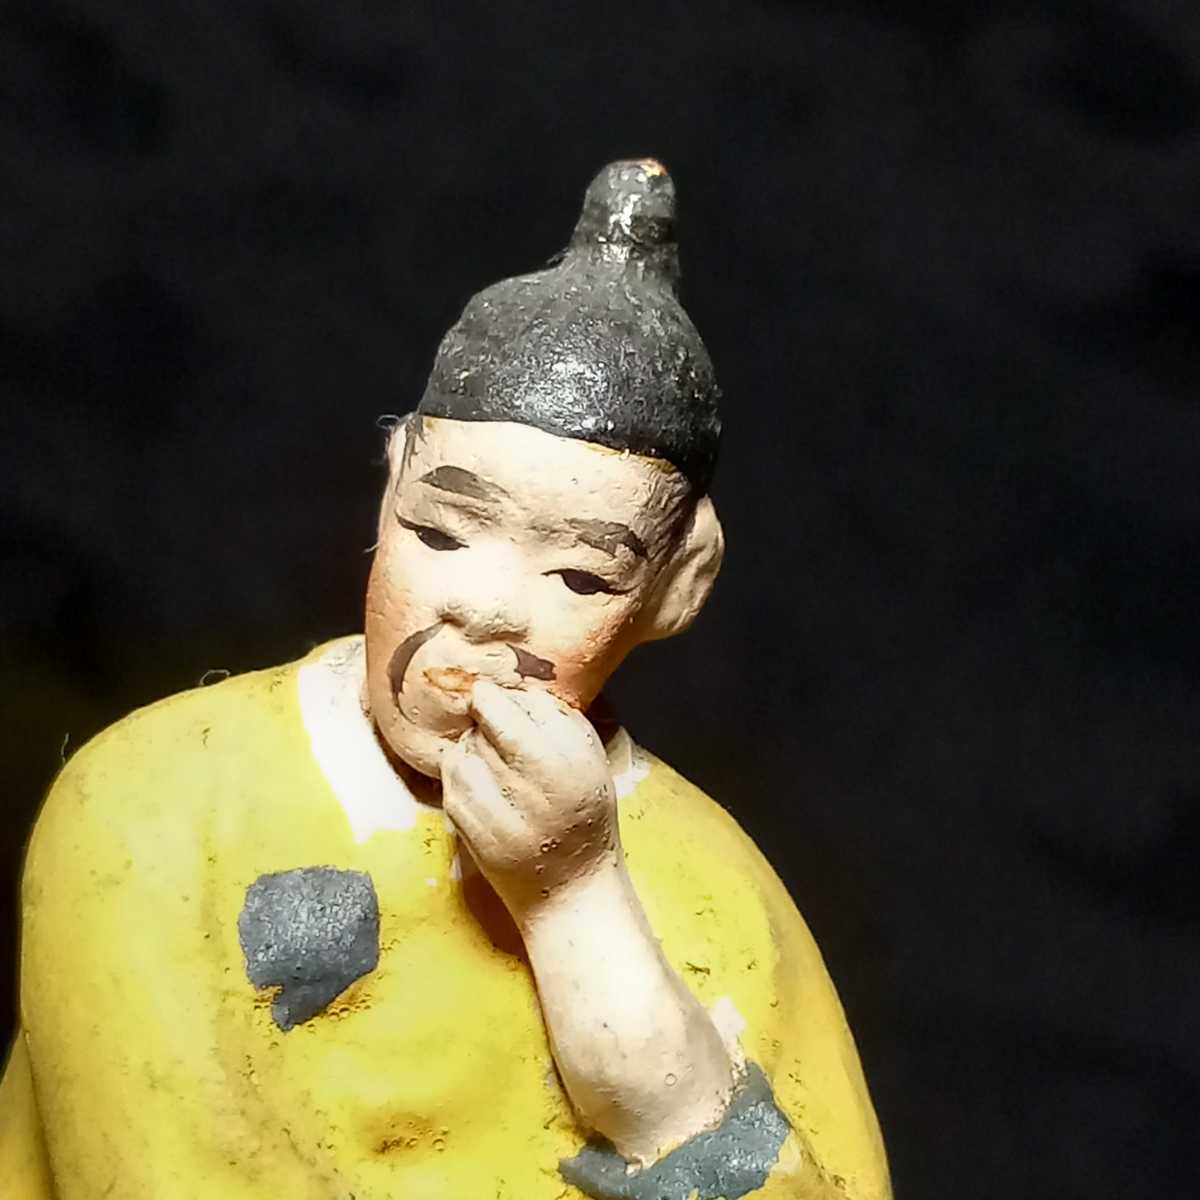 戦前 朝鮮風俗人形 土人形 12.5cm / 郷土玩具 韓国人形 民芸 古玩 置物 朝鮮土人形_画像8